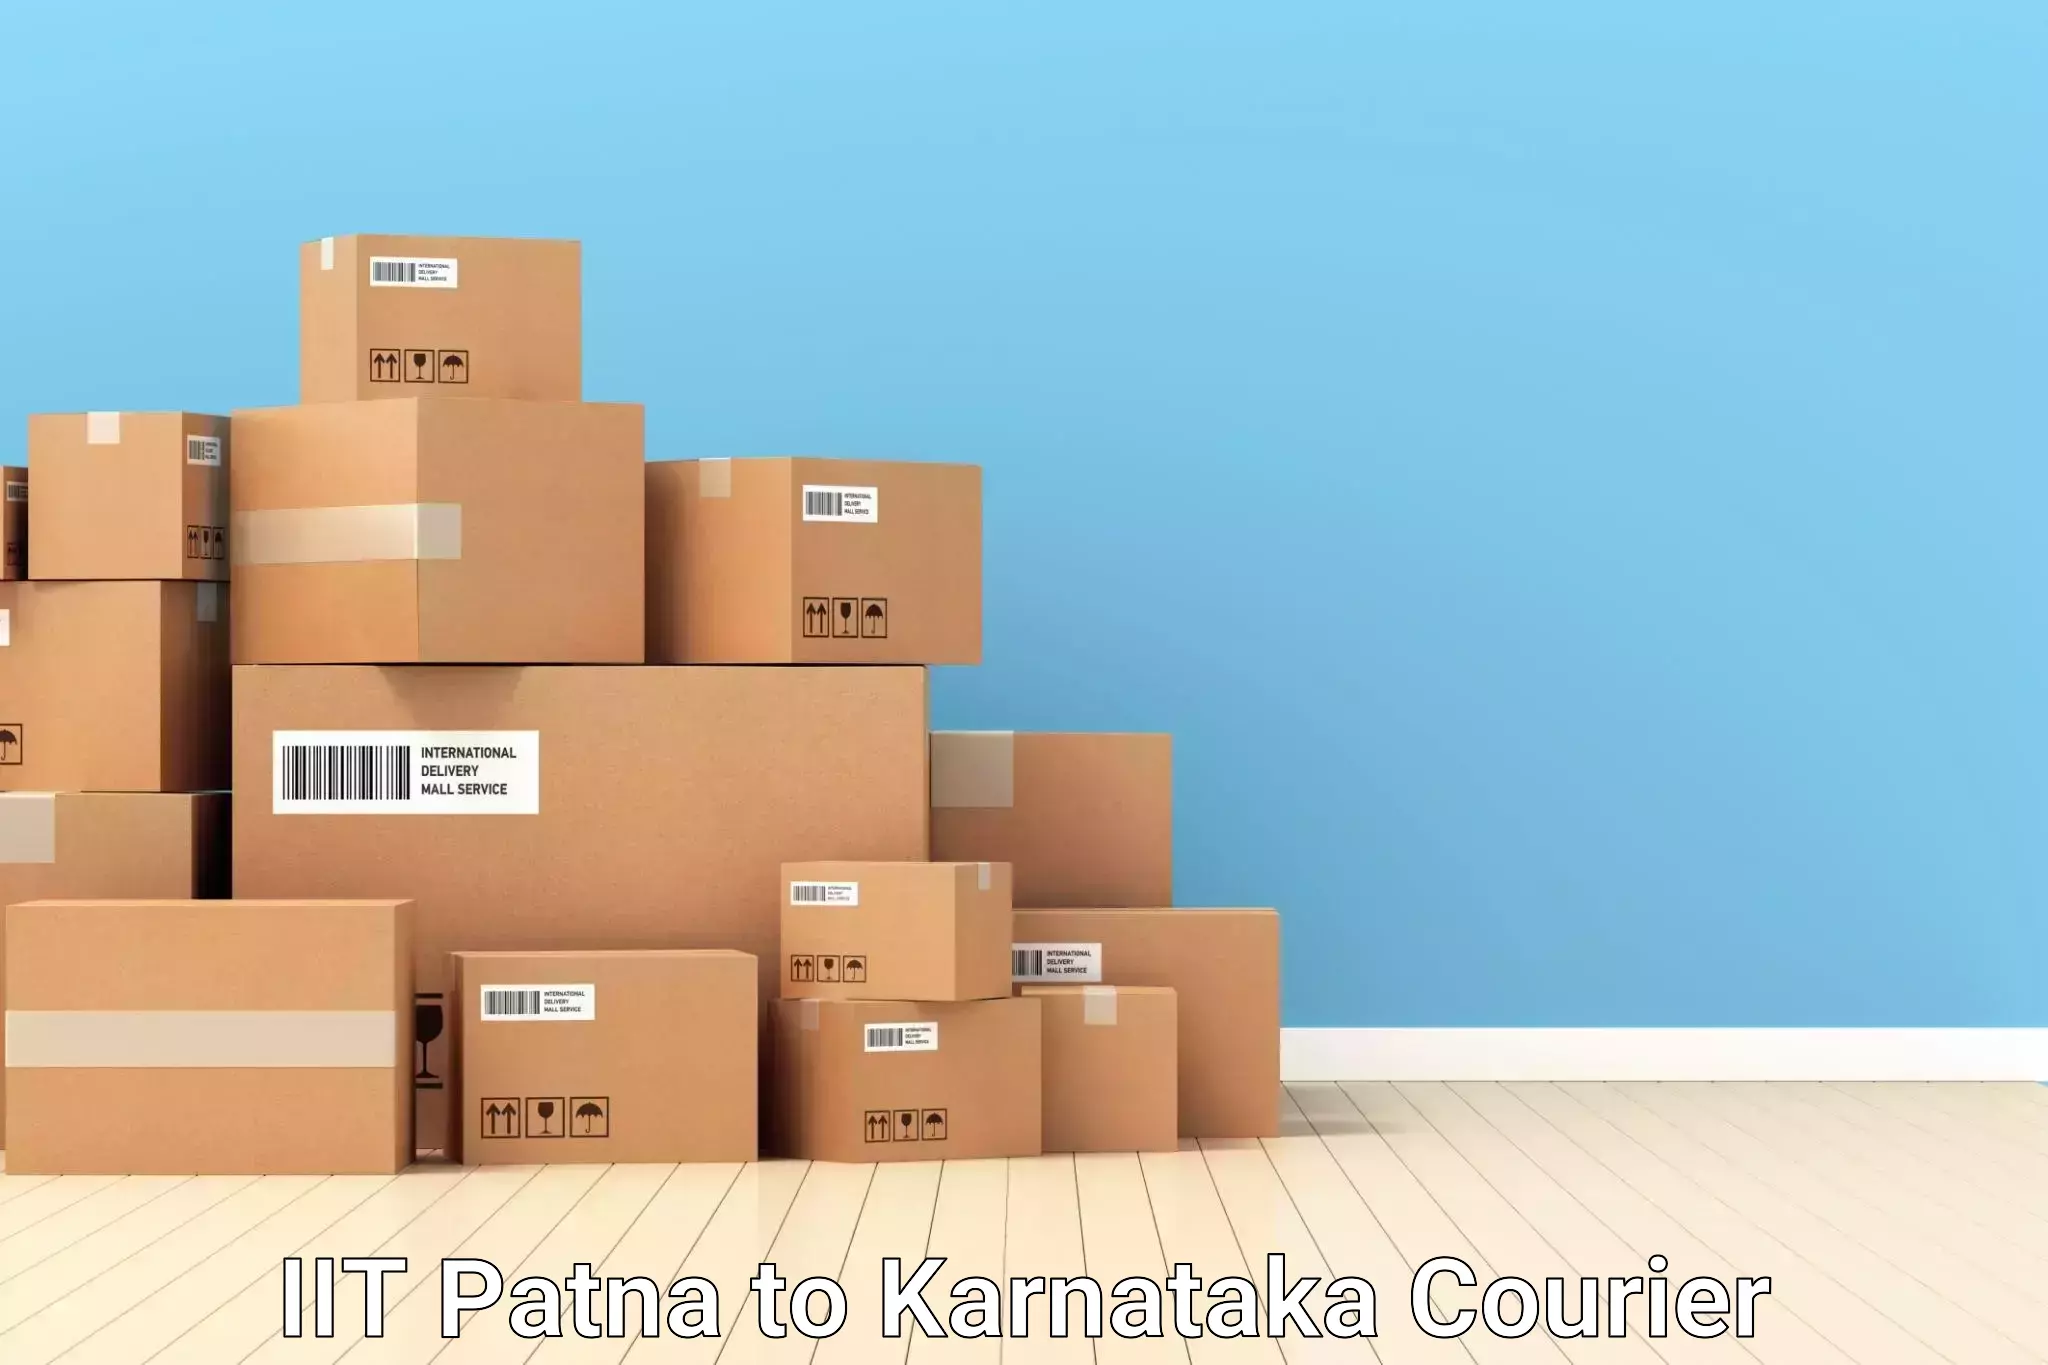 Baggage relocation service IIT Patna to Kanjarakatte